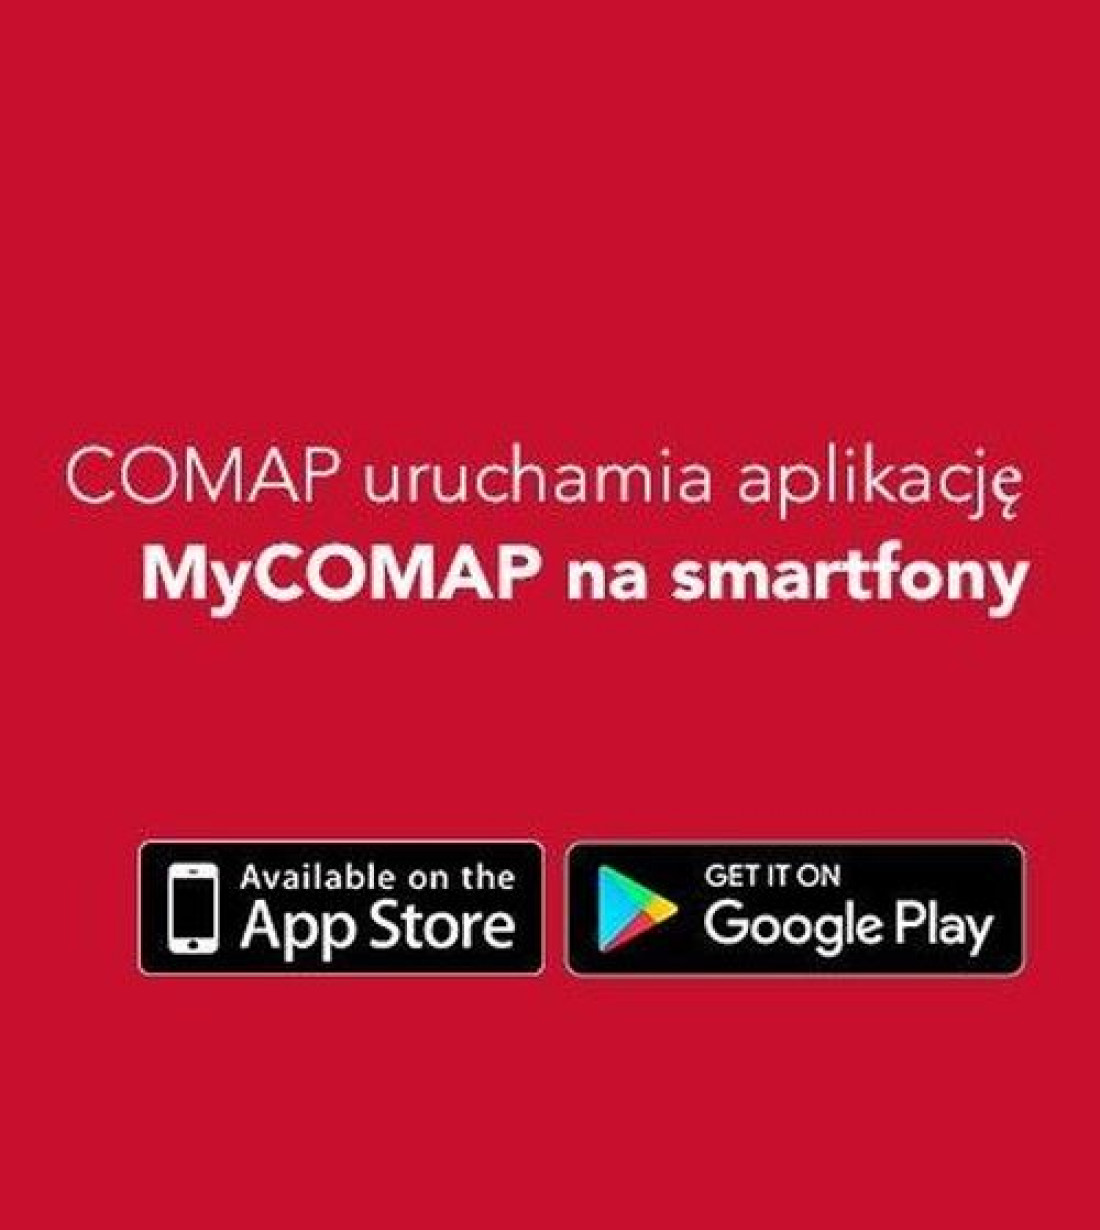 Aplikacja na smartfony MyCOMAP - bezcenna pomoc dla instalatorów